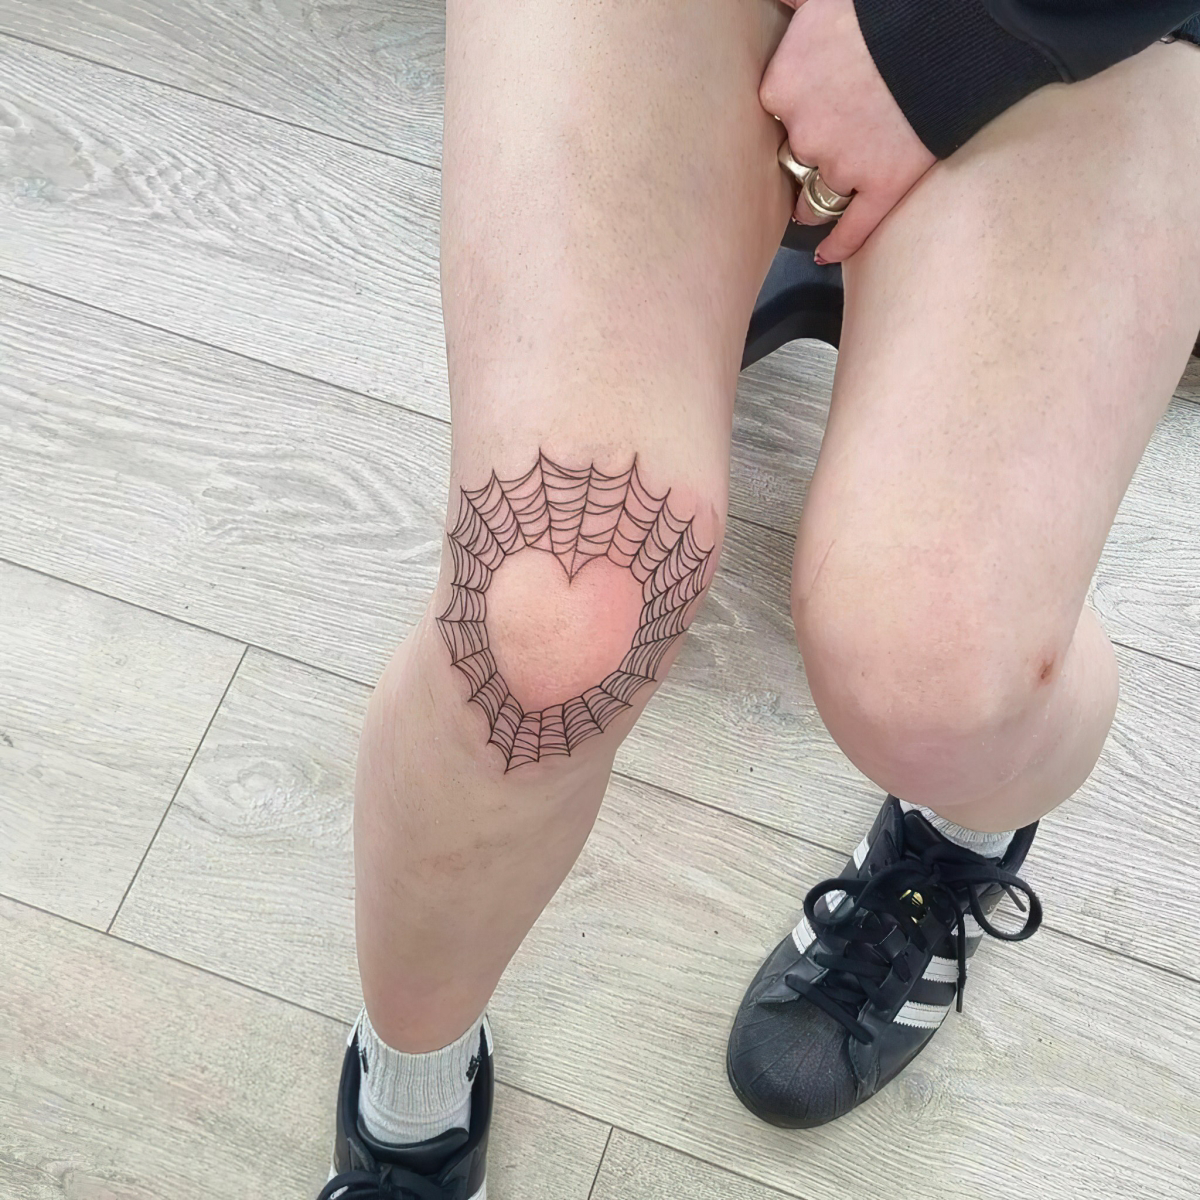 tattoo ideas on knee